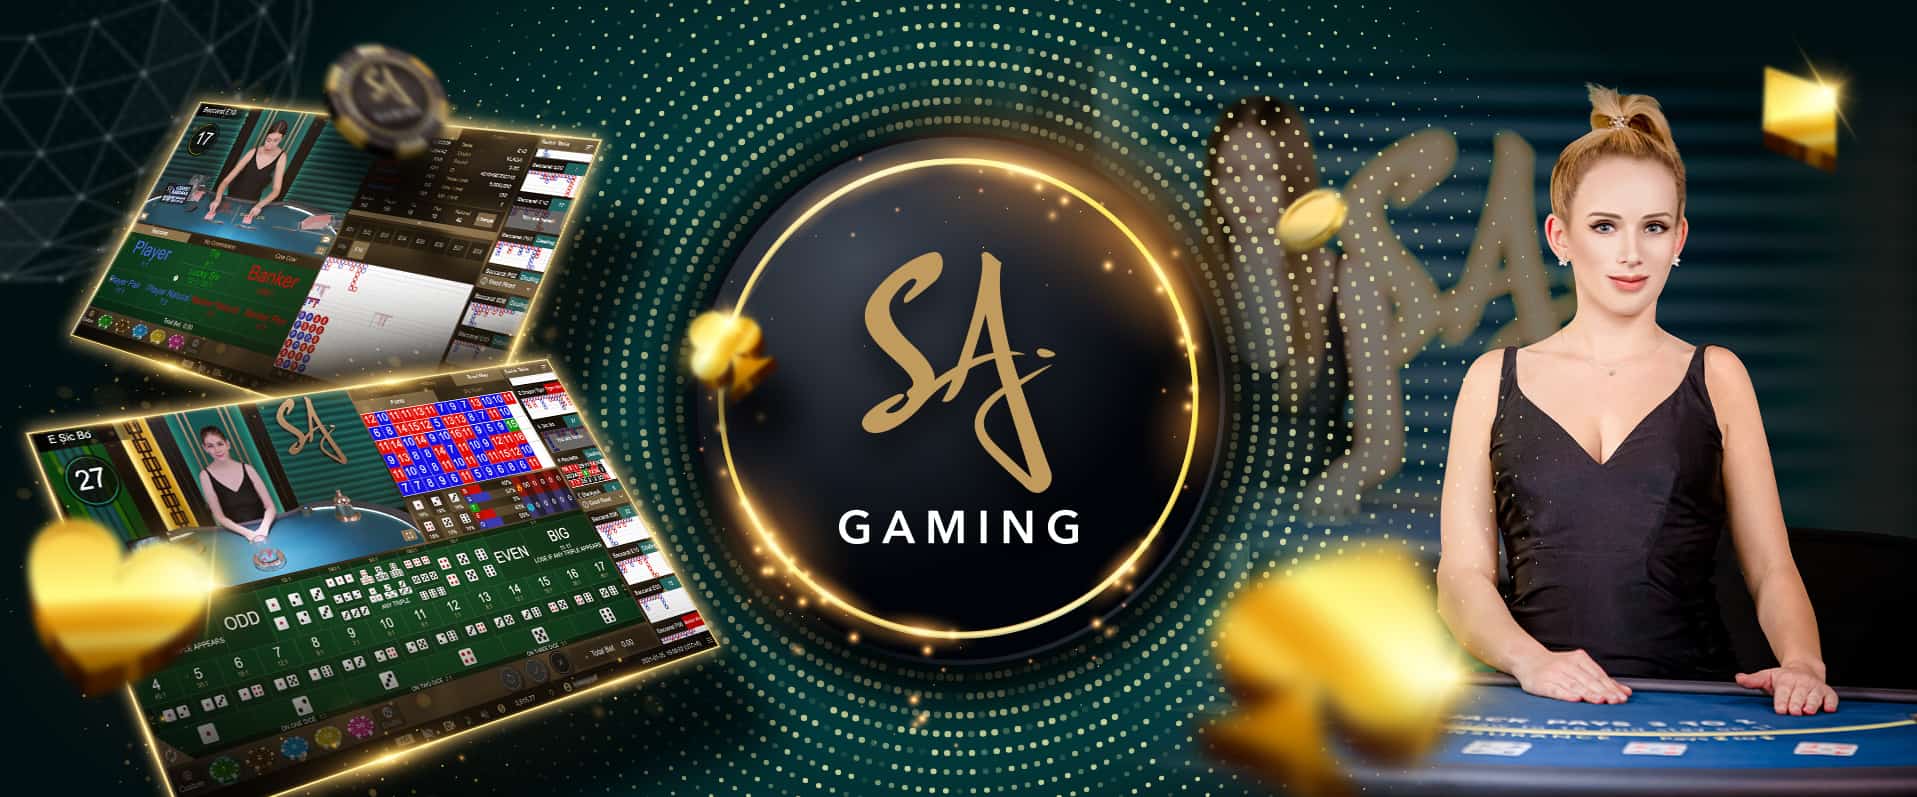 SA-Gaming-banner.jpg